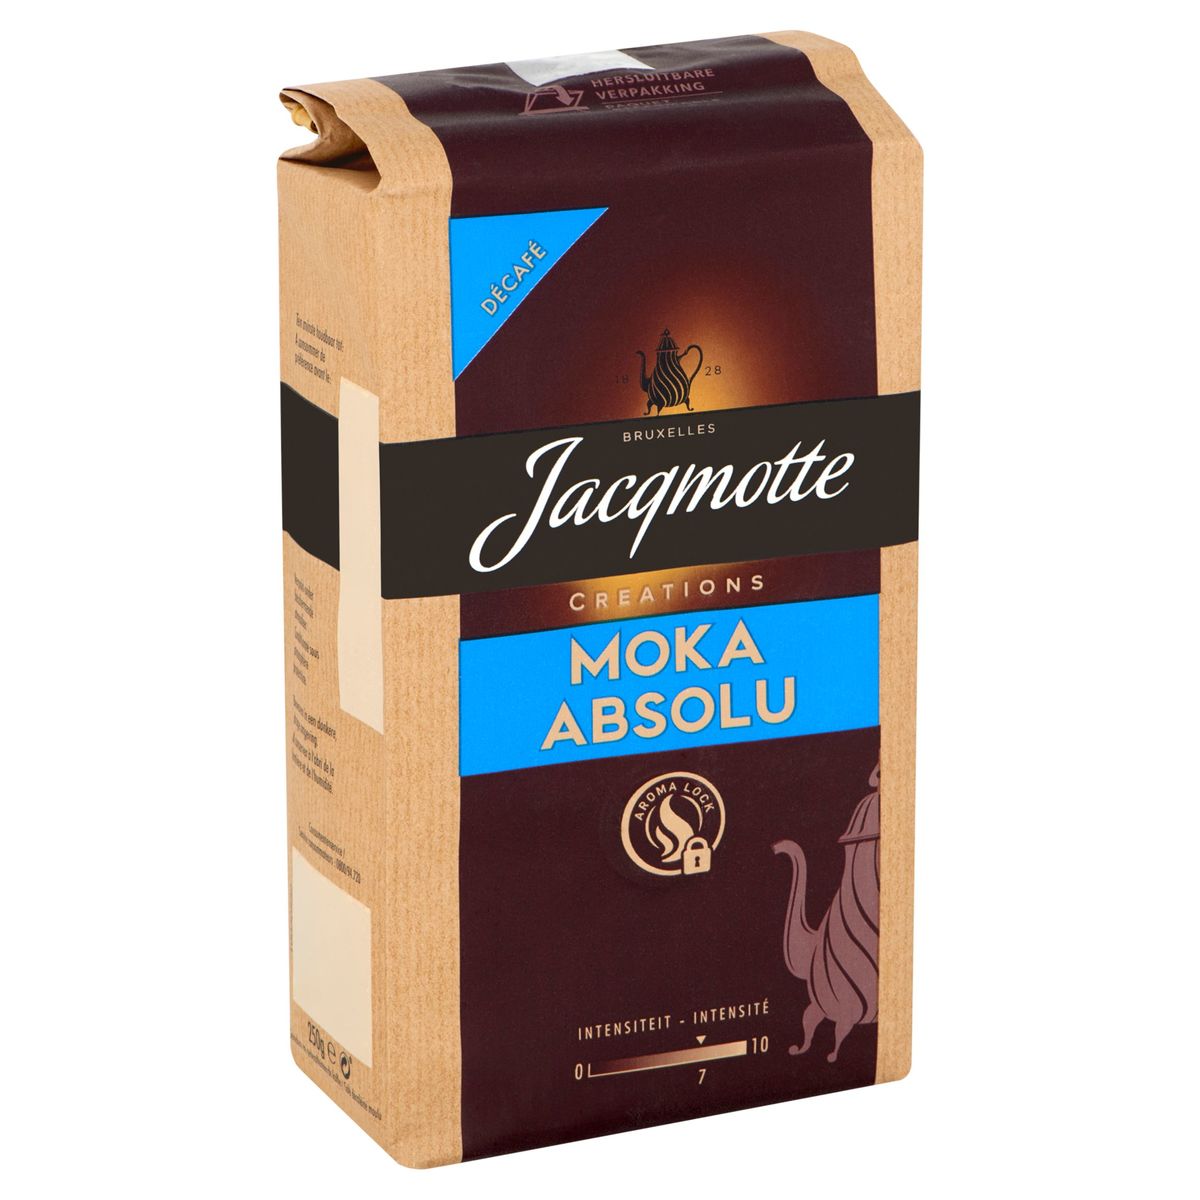 Jacqmotte Koffie Gemalen Moka Absolu Decafe 250 g